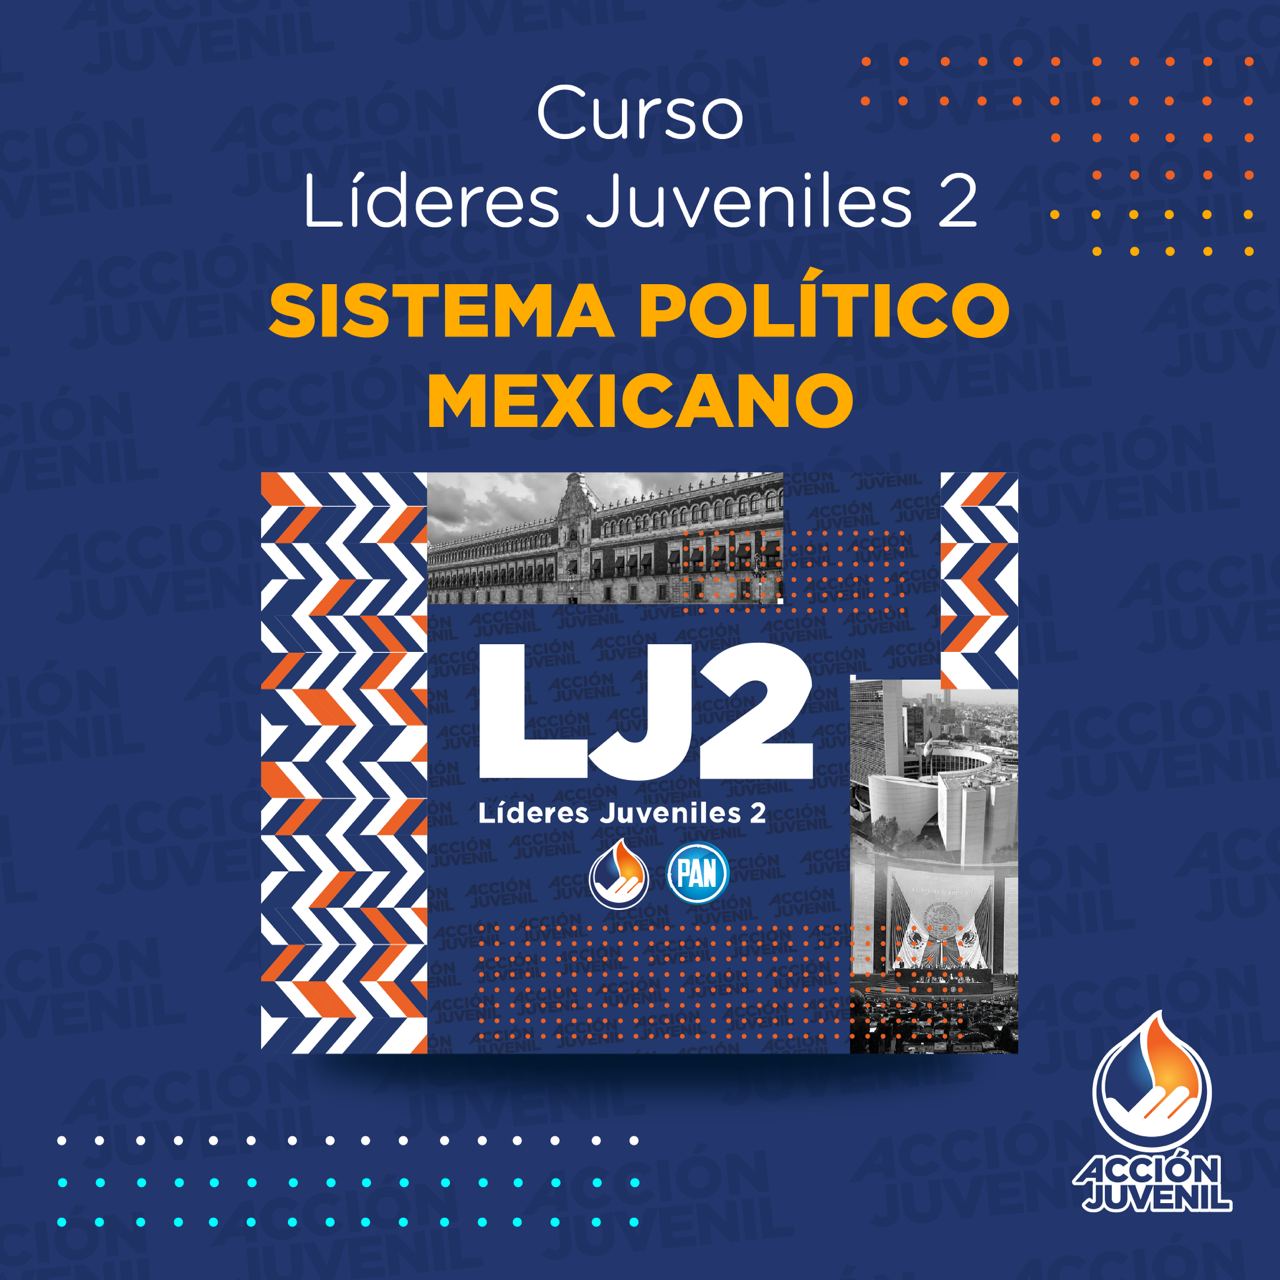 Curso Líderes Juveniles 2 Sistema Político Mexicano San Nicolás de los Garza, NL 03/07/22